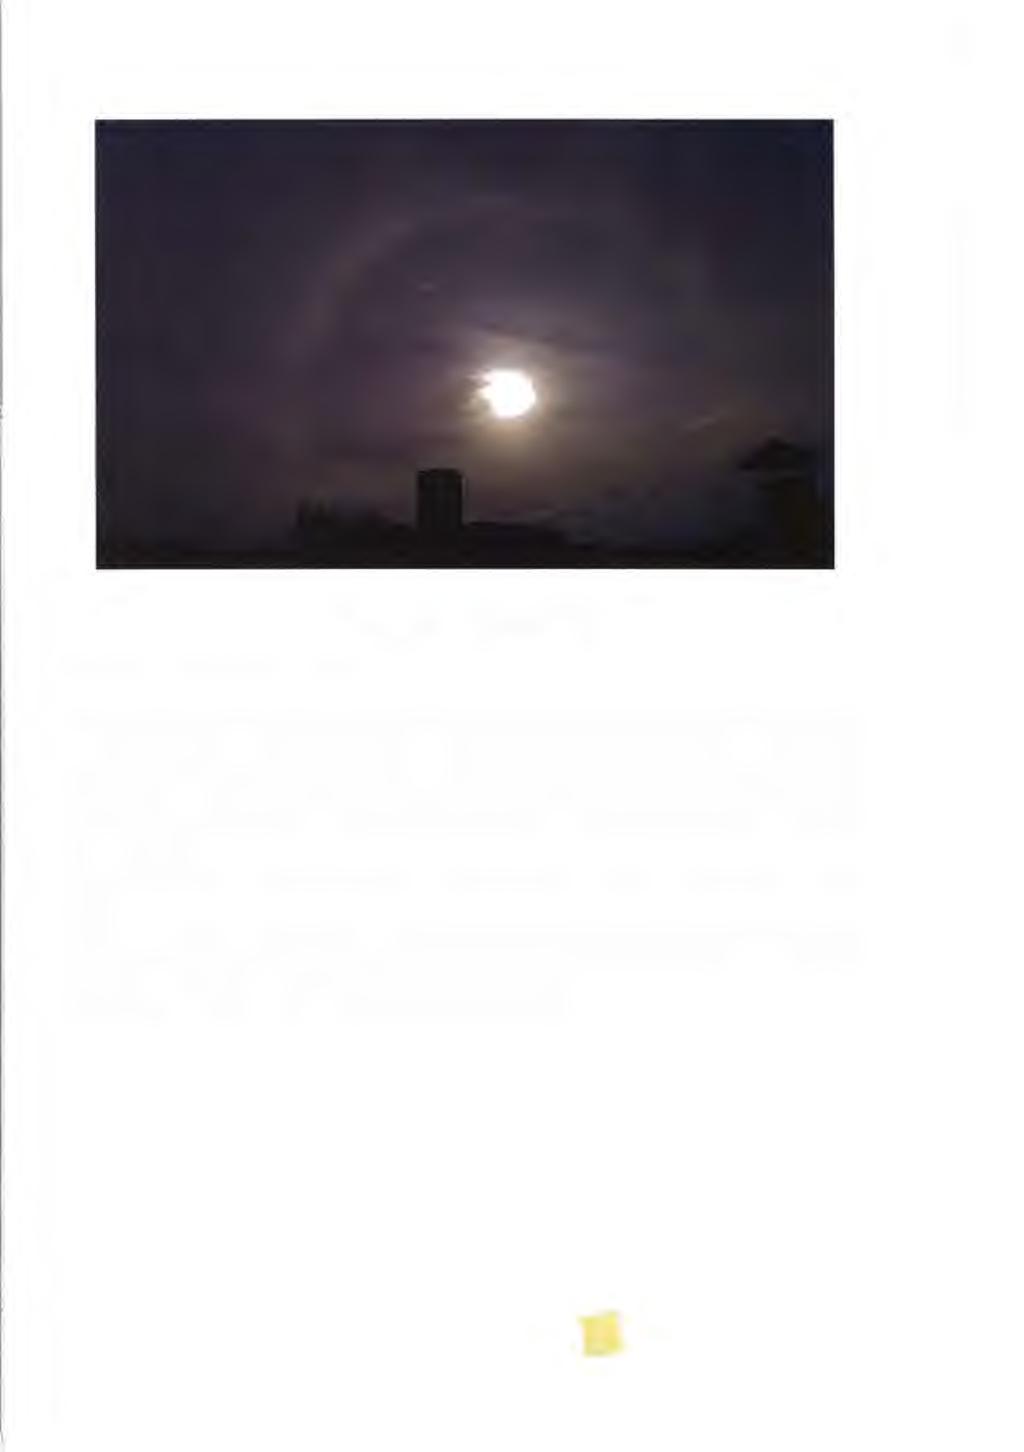 Vedlejší slunce (parhelia, paslunce) Obr. č. 4.11 - Malé halo, Londýn, 8.8. 1996 (Bernard Mühr, převzato z [9]) Dalším častým halovým jevem je tzv. vedlejší slunce.